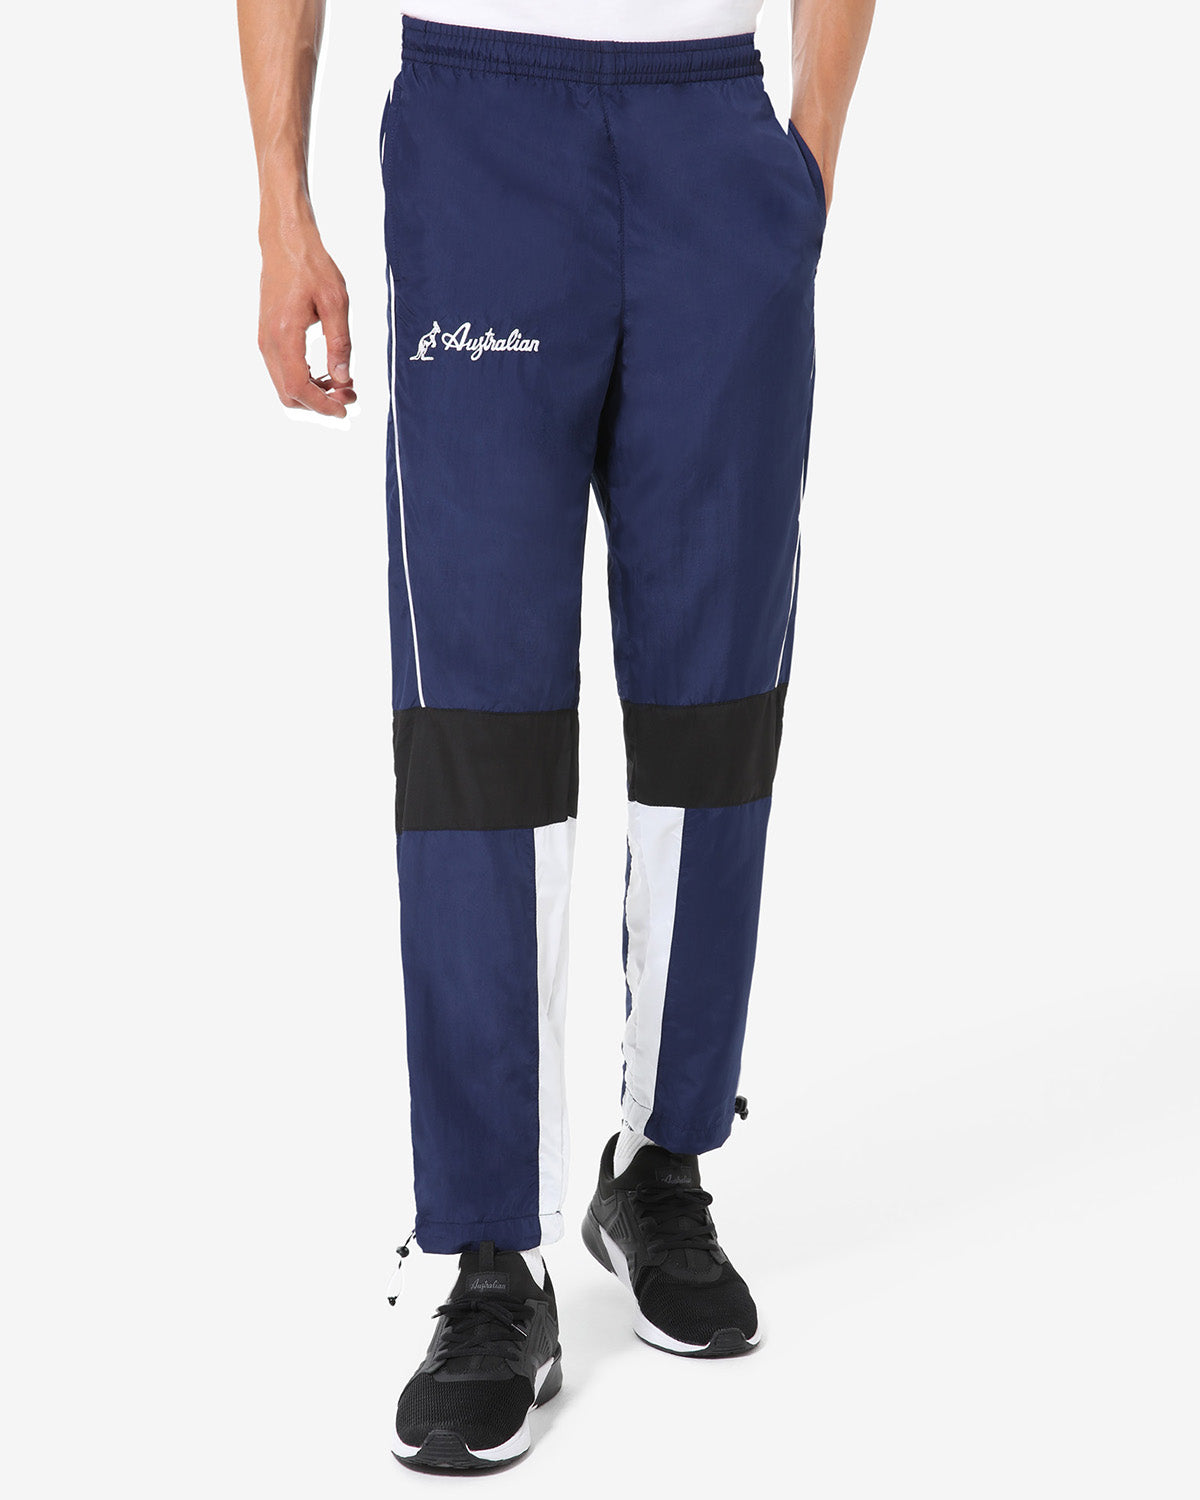 Urban Pant: Australian Sportswear